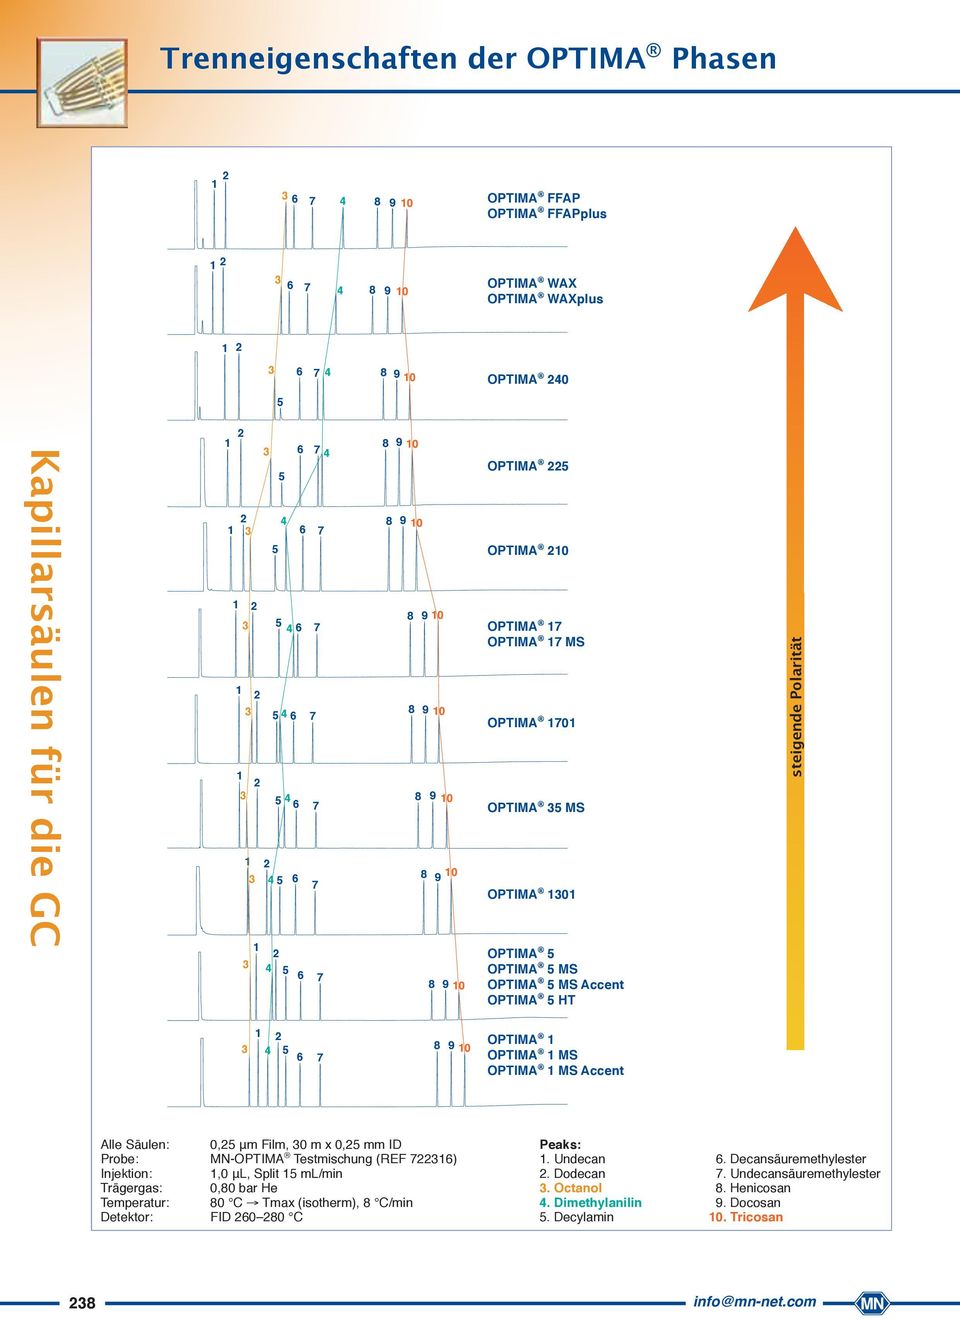 PTIMA MS Accent Alle Säulen: 0, μm Film, 0 m x 0, mm ID Probe: MN-PTIMA Testmischung (REF 76) Injektion:,0 μl, Split ml/min Trägergas: 0,80 bar He Temperatur: 80 C Tmax (isotherm), 8